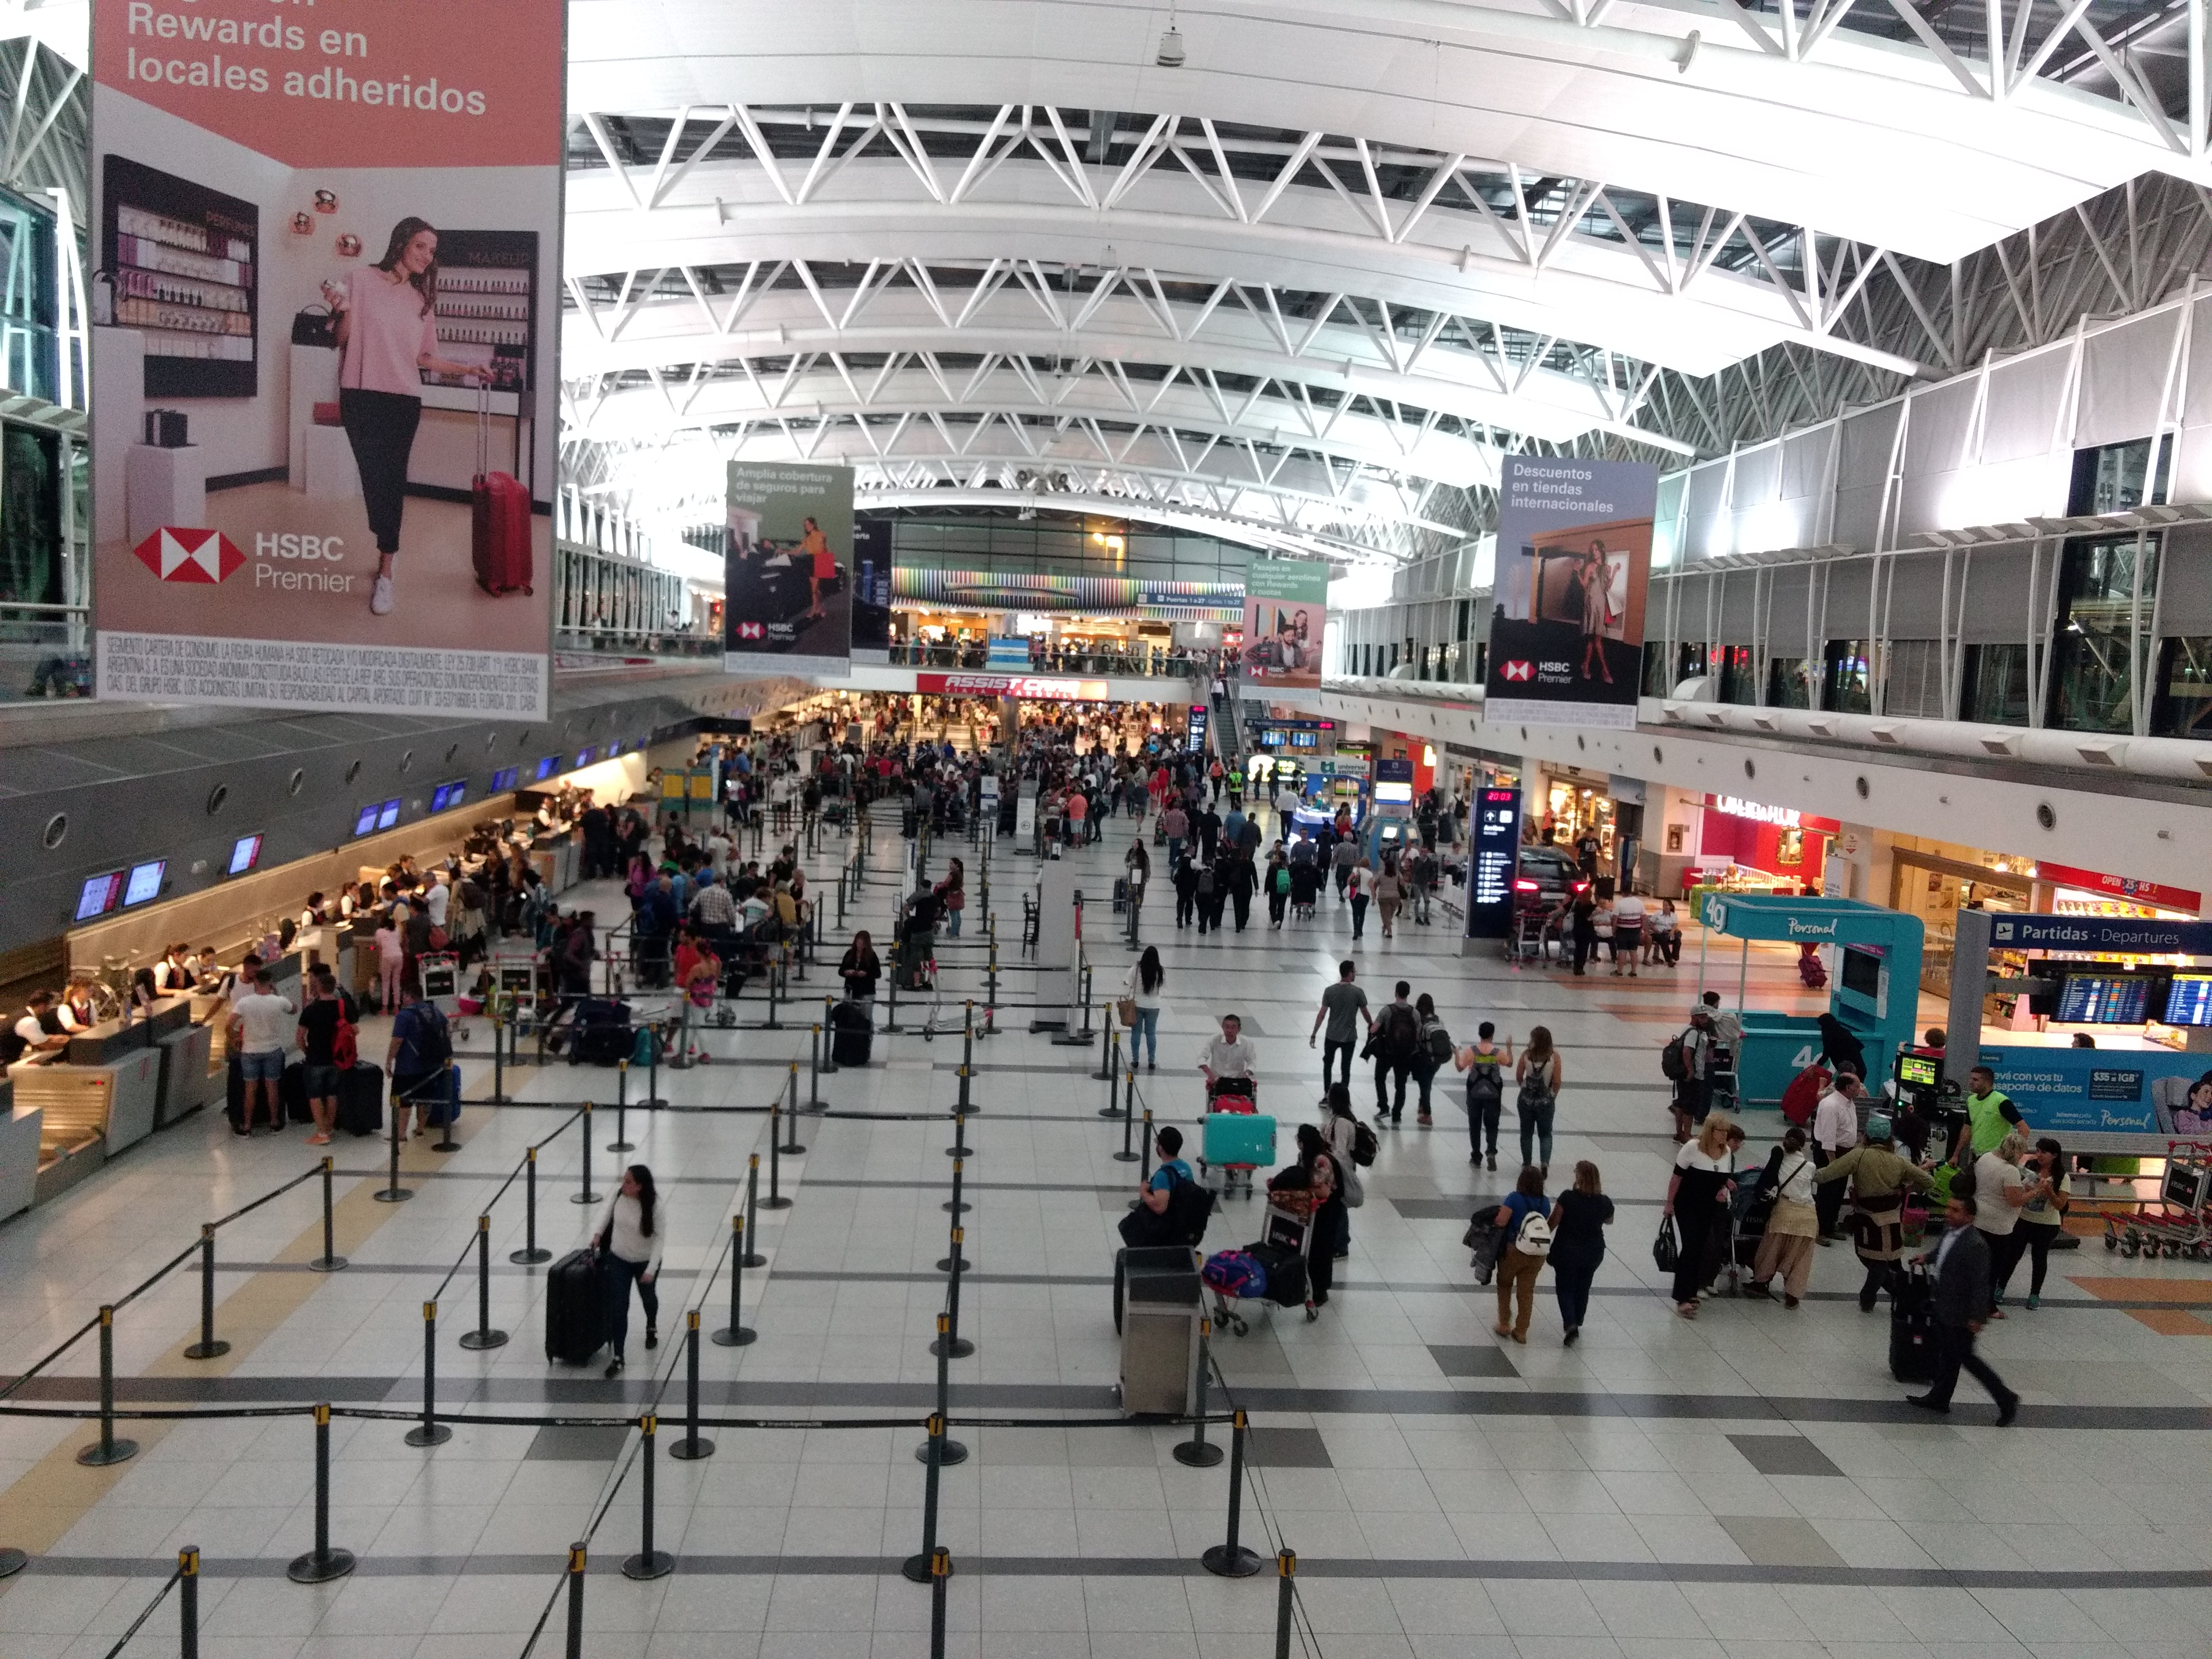 Puntos Rewards HSBC: Pagar tus consumos en aeropuerto